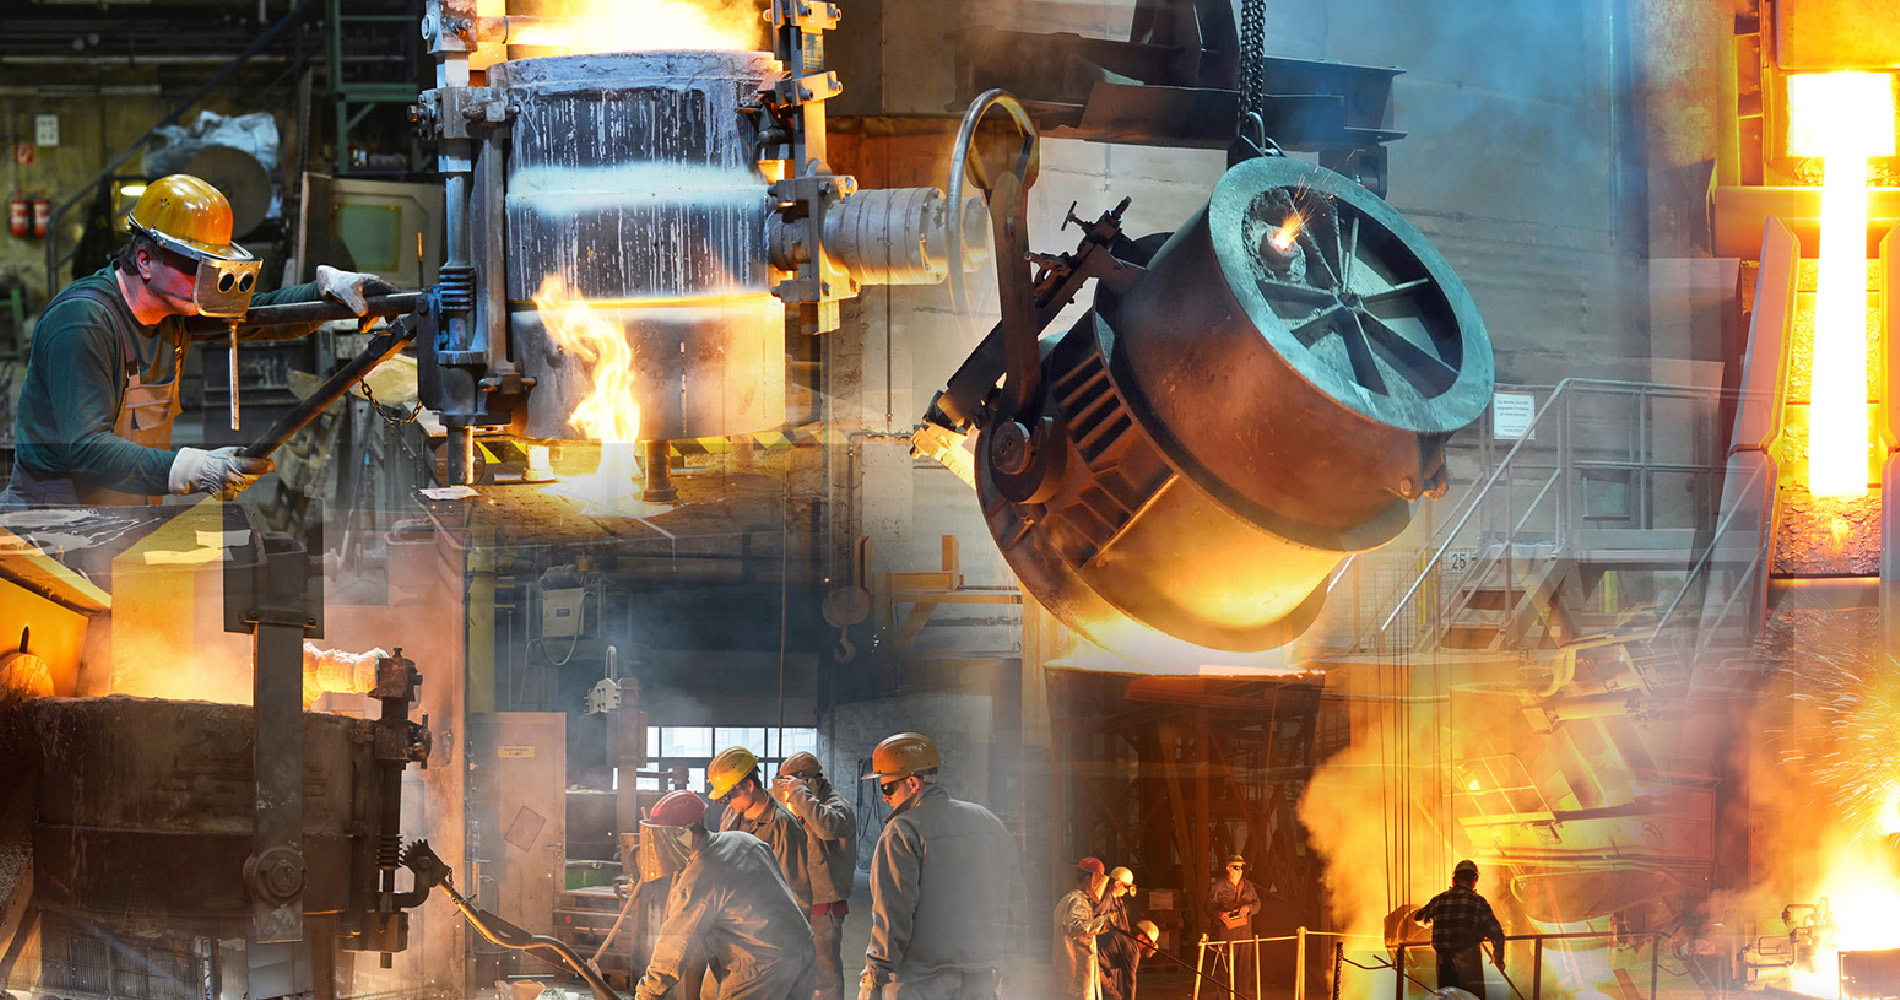 Demir Çelik Fabrikaları Basınçlı Ekipman İmalat ve Montaj